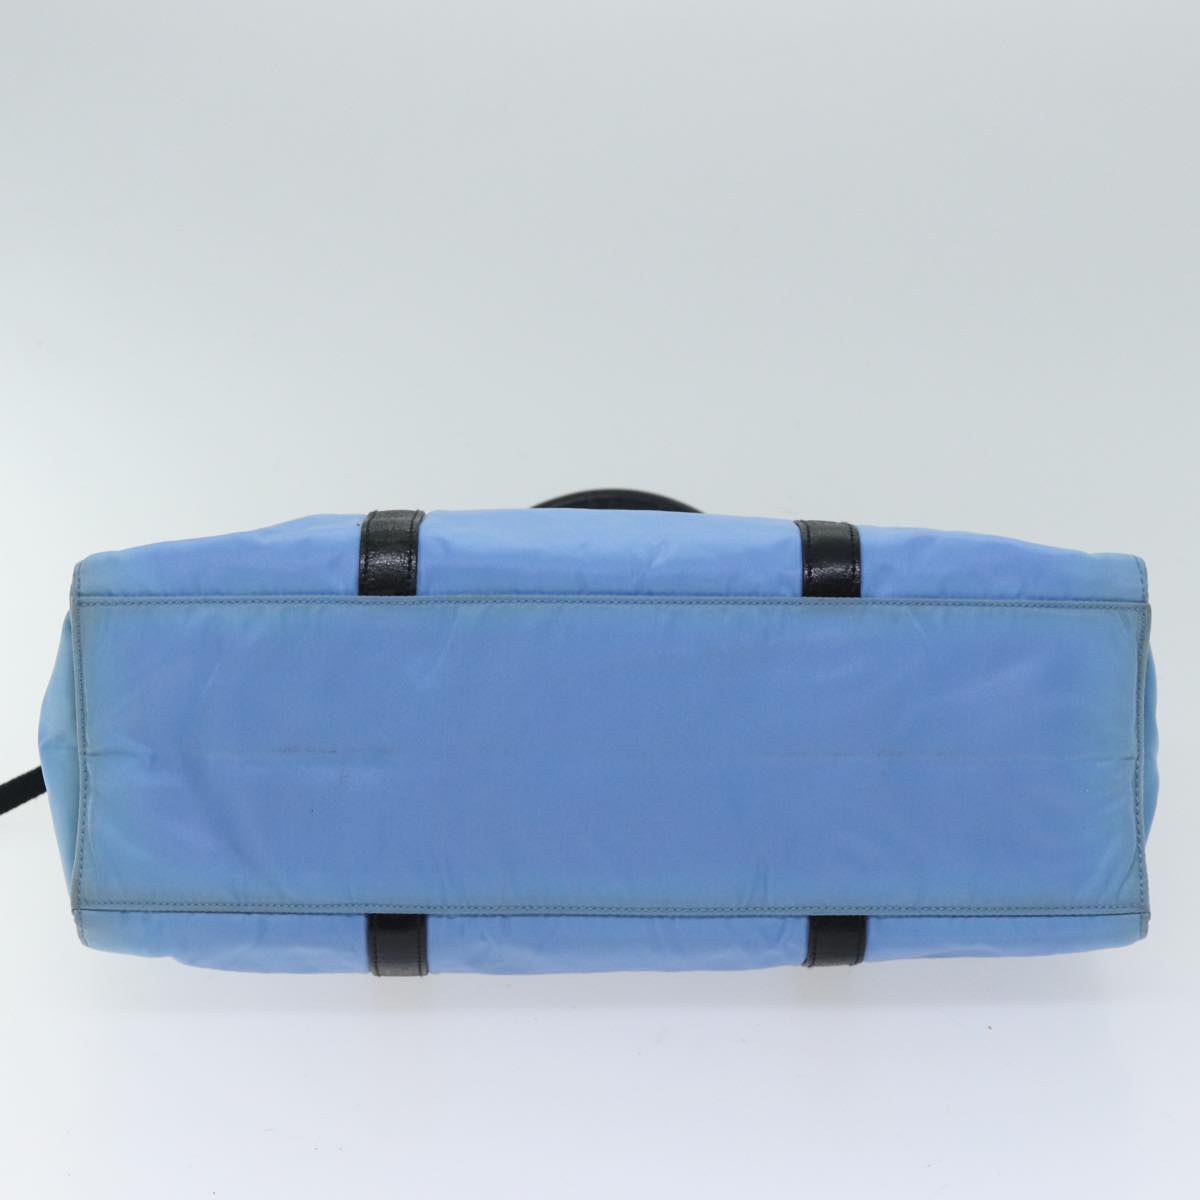 PRADA Hand Bag Nylon Light Blue Black Auth 72011